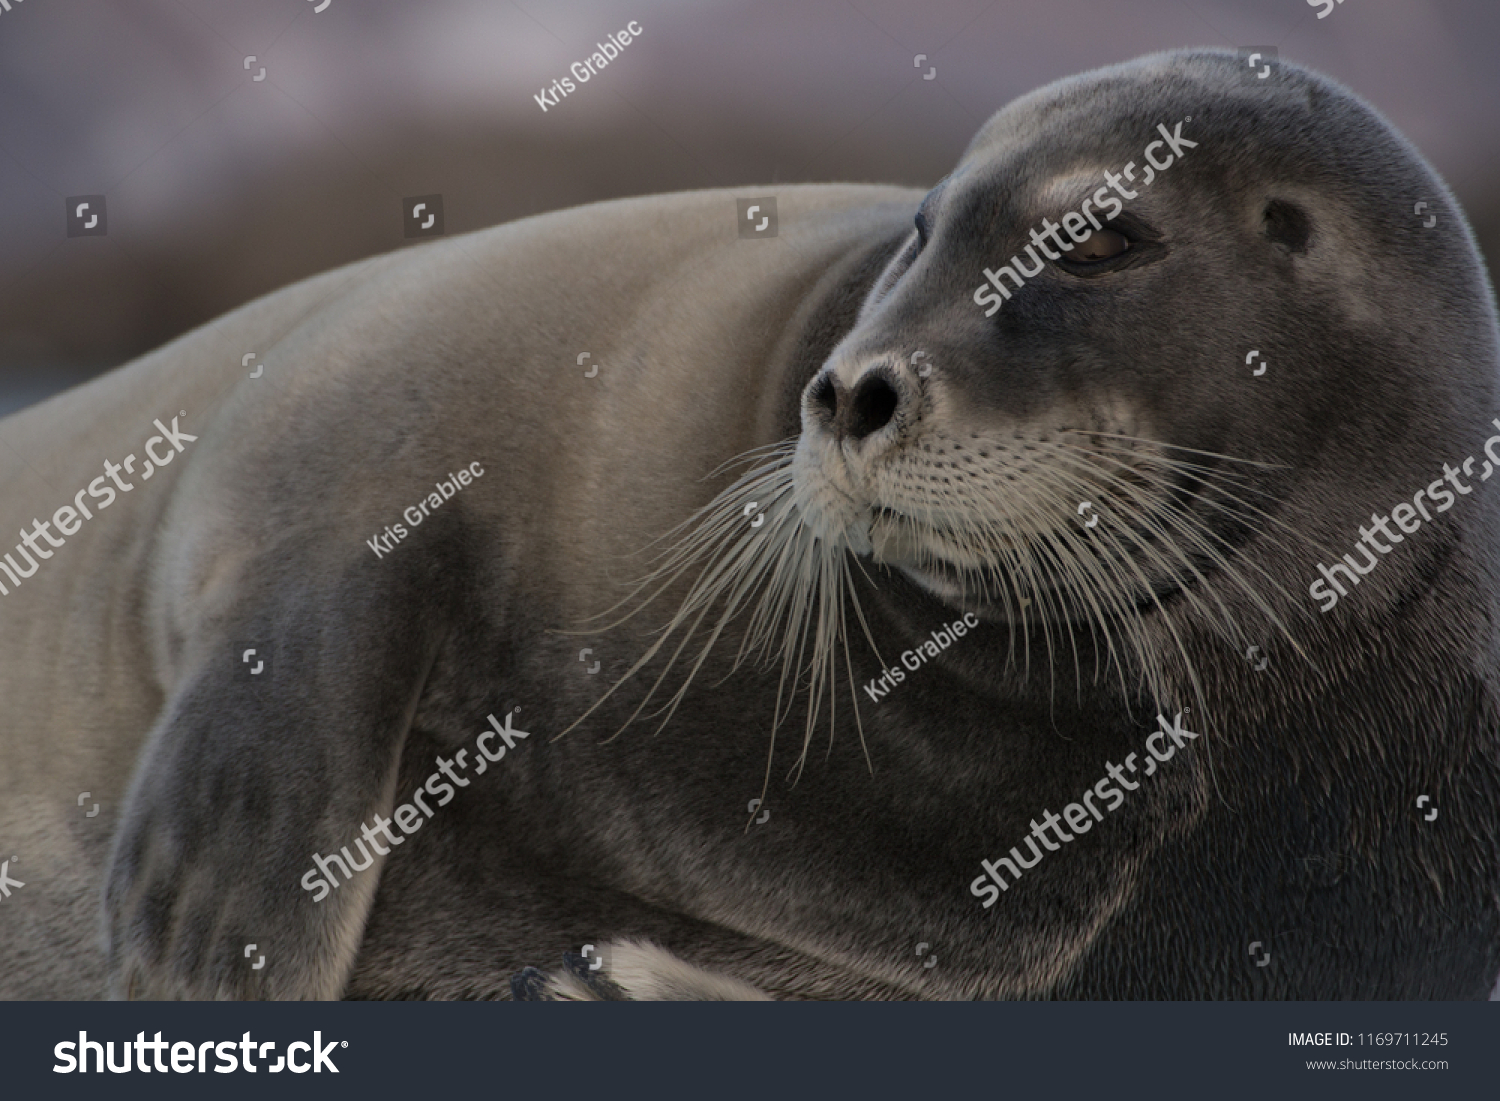 Harp seal tongue